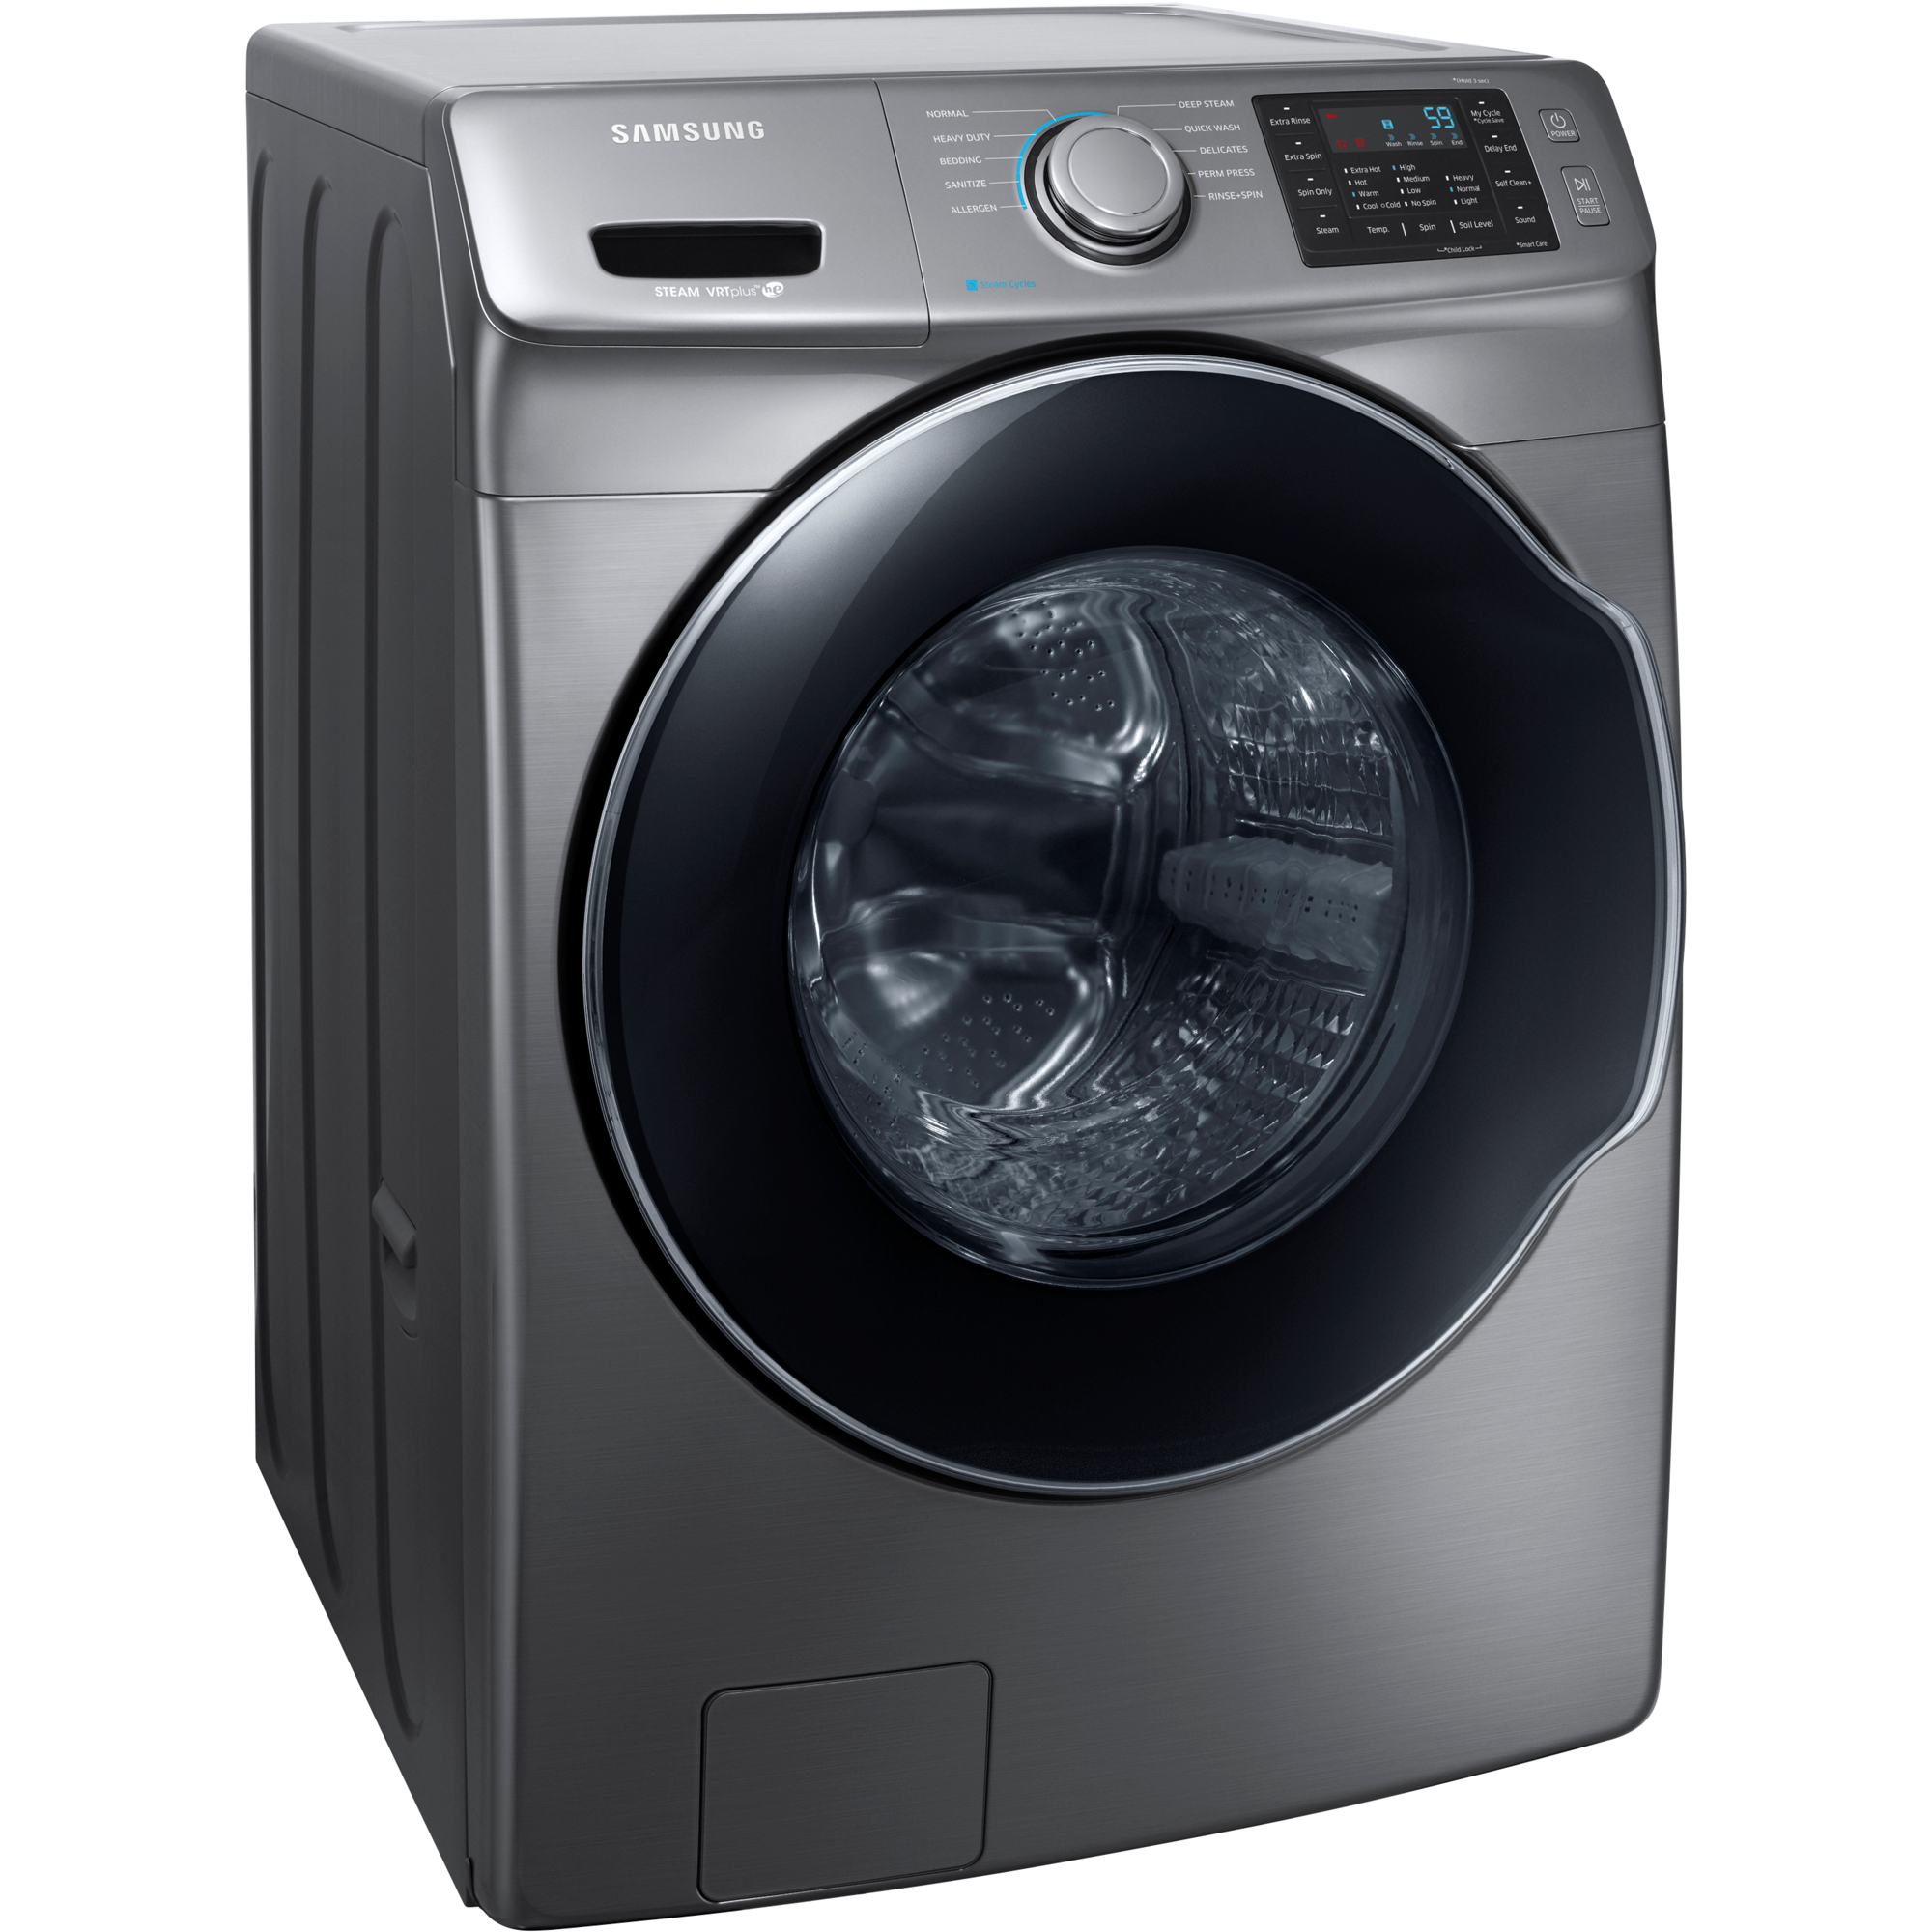 Стиральная машина с горизонтальной загрузкой купить. Стиральная машина Samsung Washer Dryer. Стиральная машина самсунг vrt. Стиральная машина самсунг vrt Plus Digital Inverter 8кг. Стиральная машина Samsung Smart Laundry features wf457.